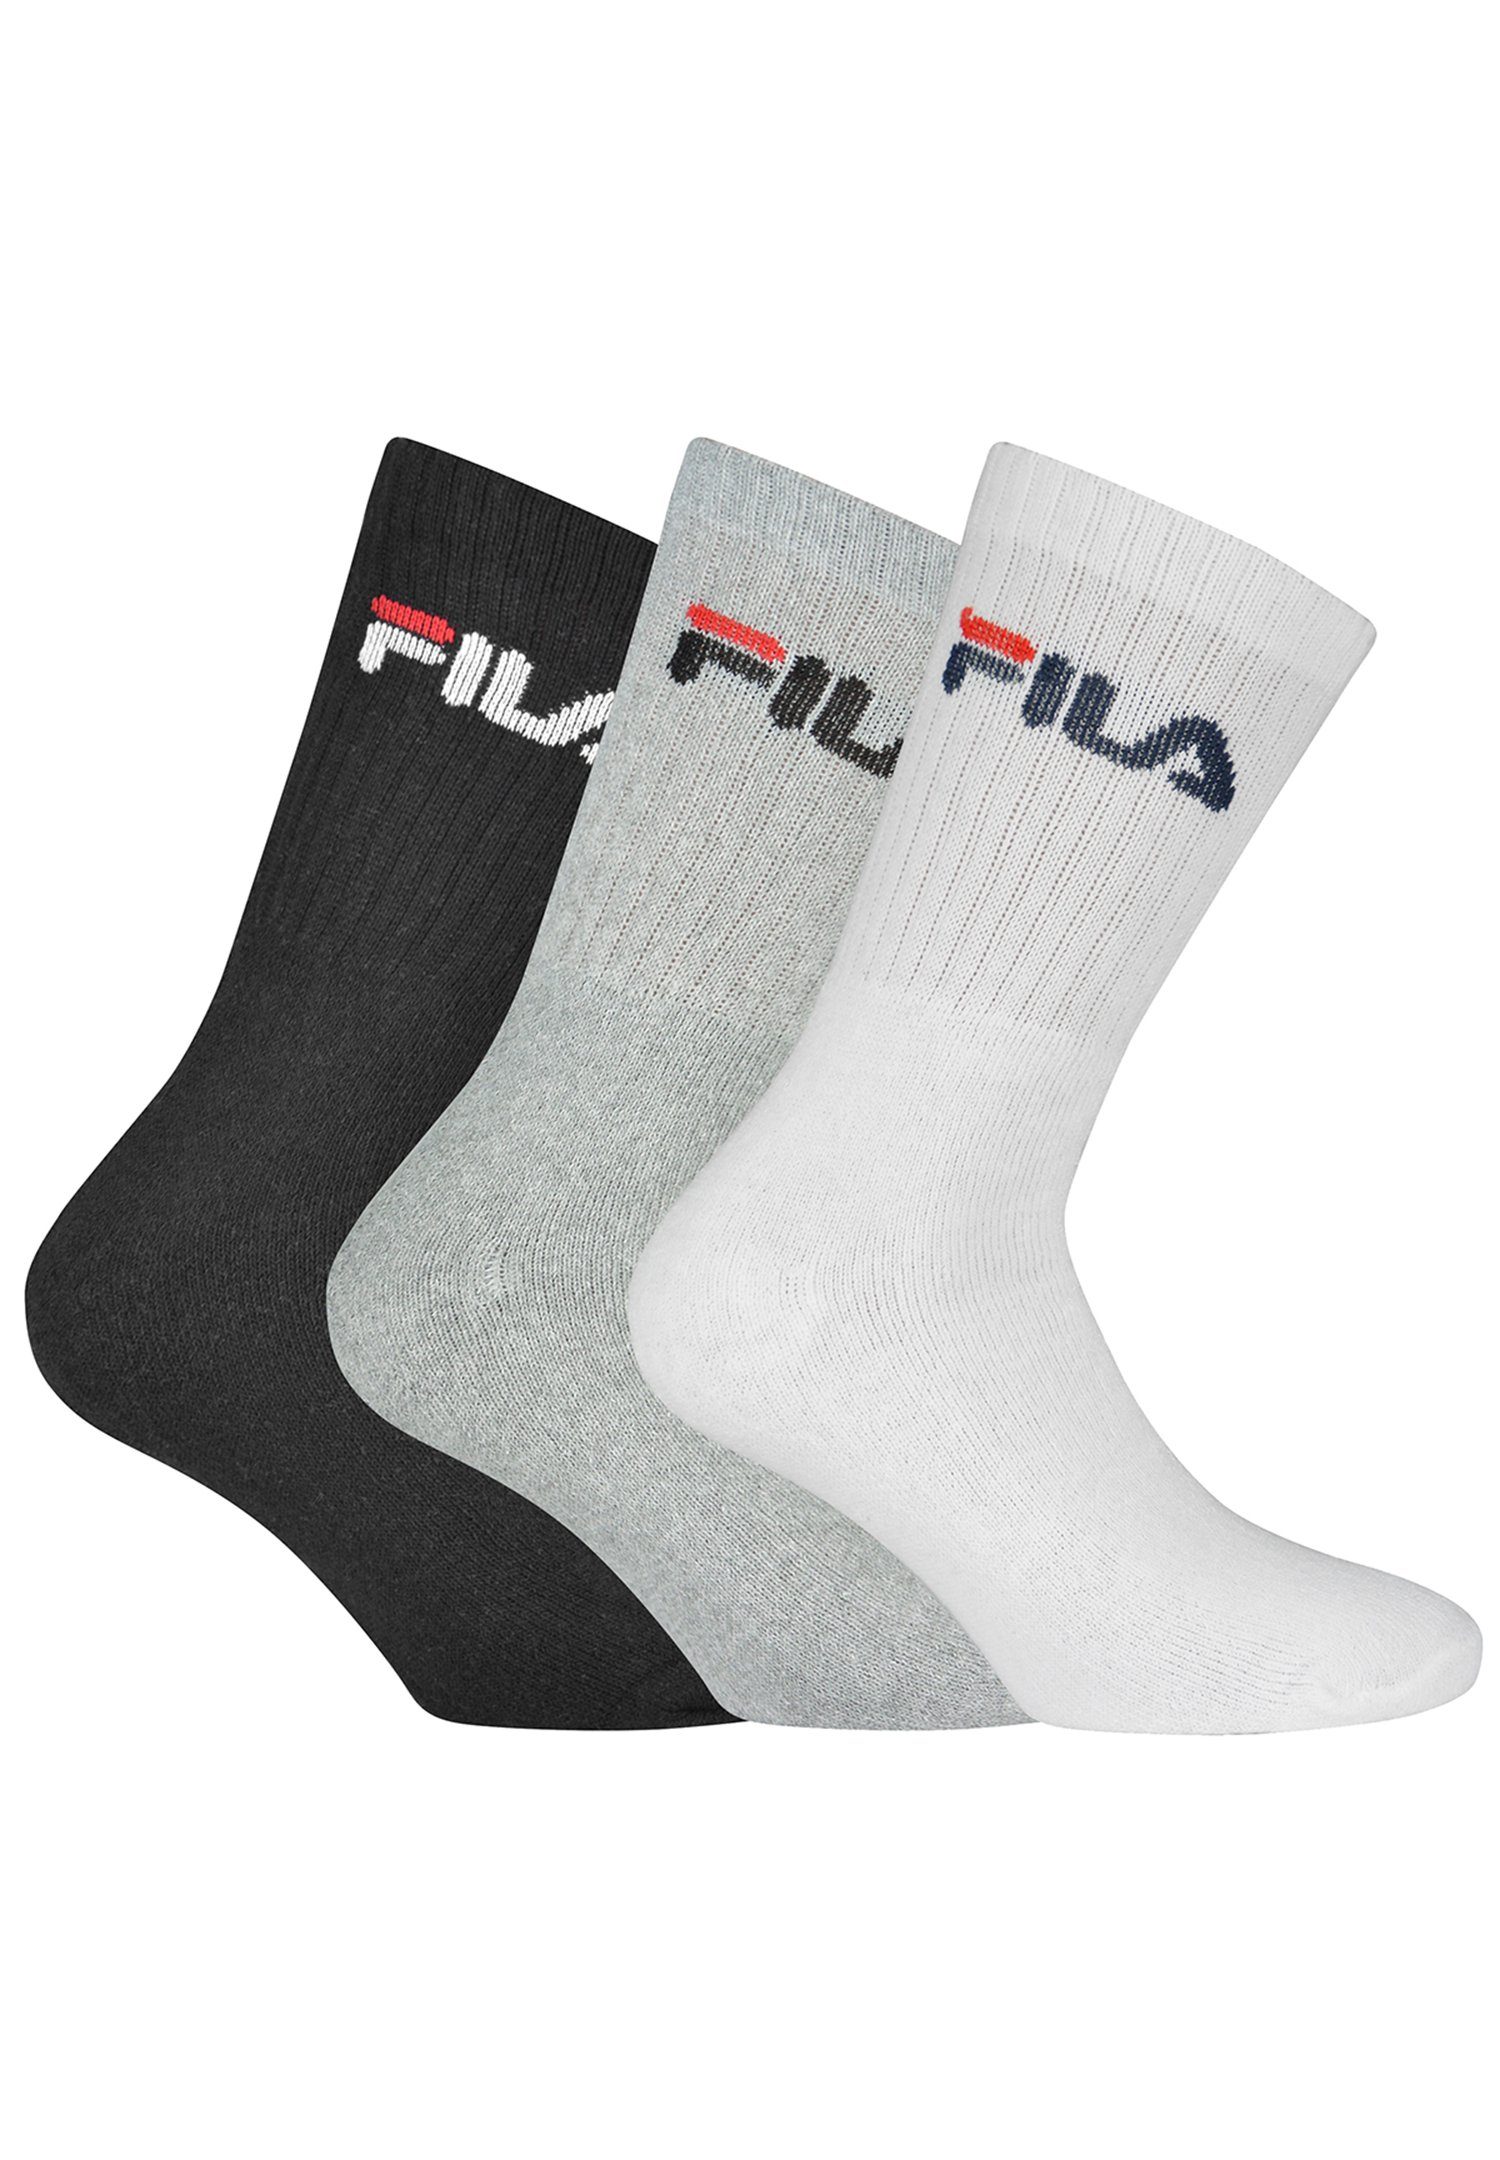 Fila Socken Men Sport Socks 3p (3-Paar) schwarz - weiß - grau